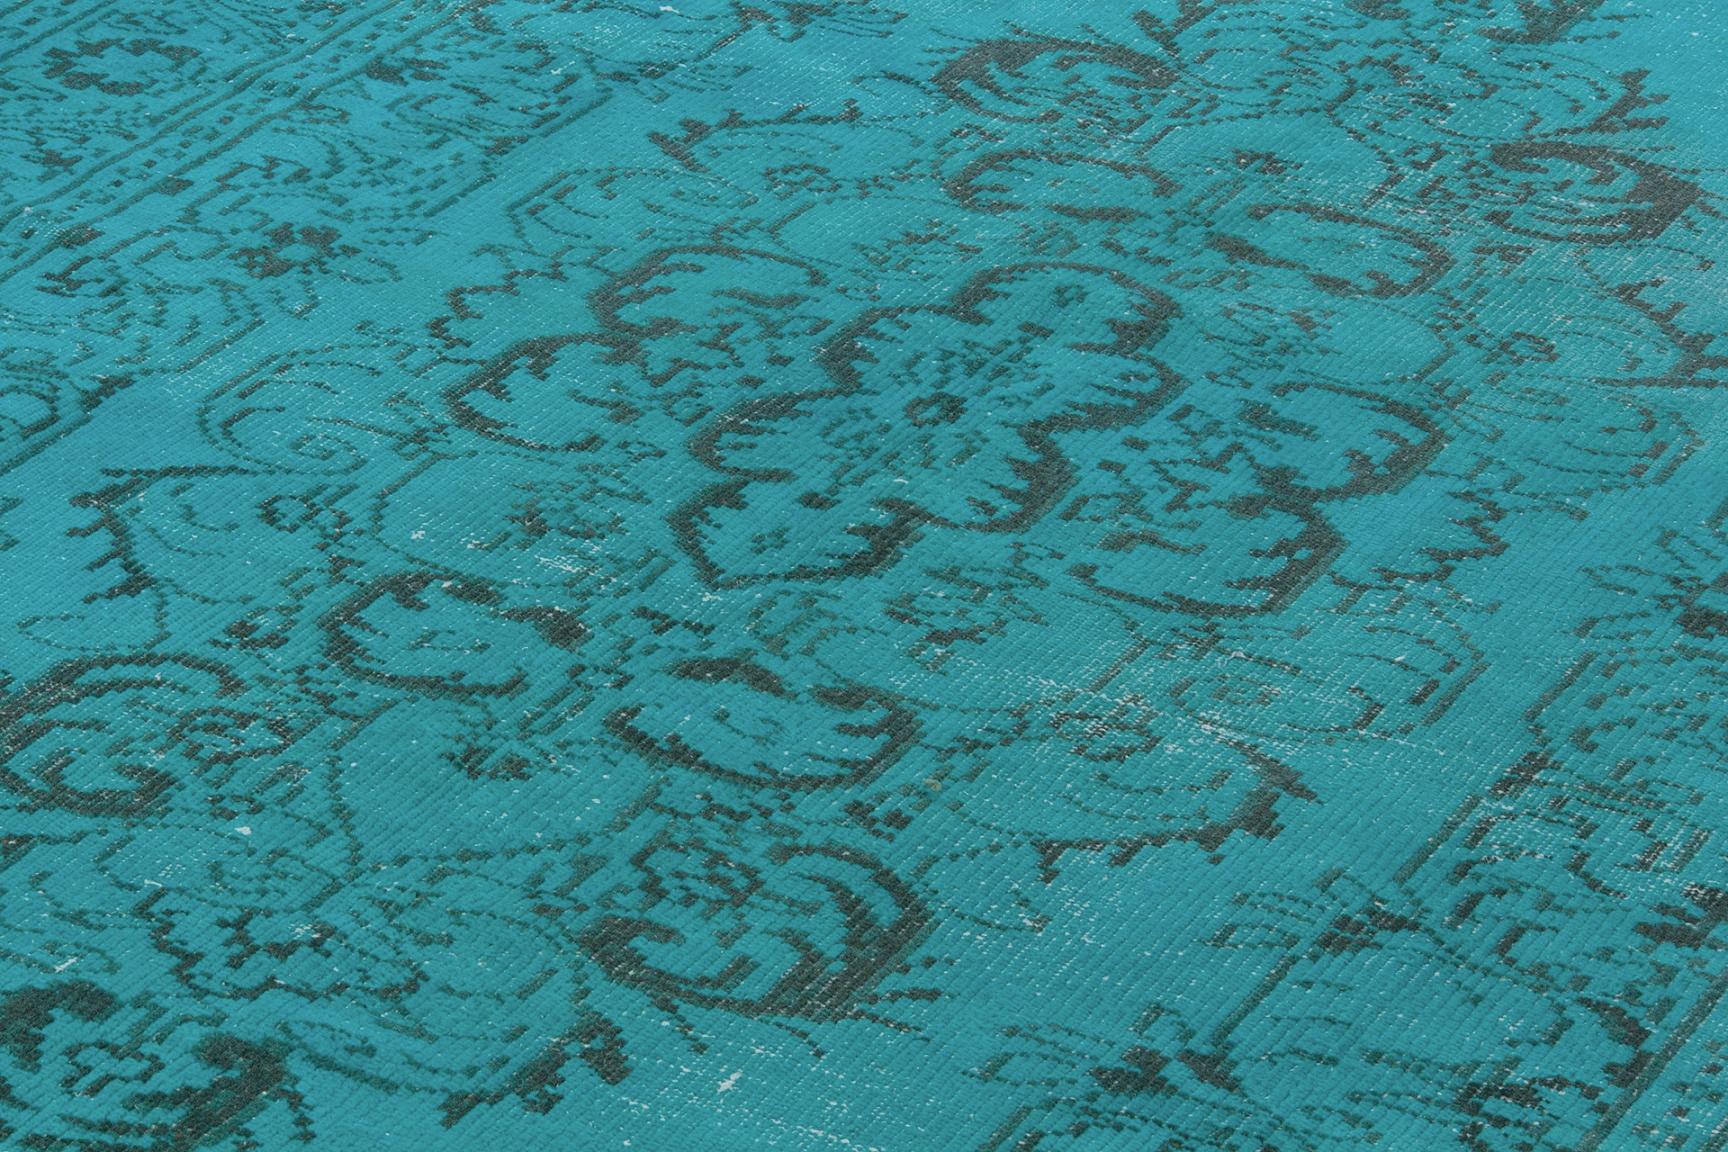 Un tapis turc vintage reteint en bleu aqua sarcelle pour les intérieurs modernes. Mesures : 6 x 10.2 ft.
Finement noué à la main, poils de laine bas sur une base de coton. Lavage profond.
Robuste et pouvant être utilisé sur une zone à fort trafic,